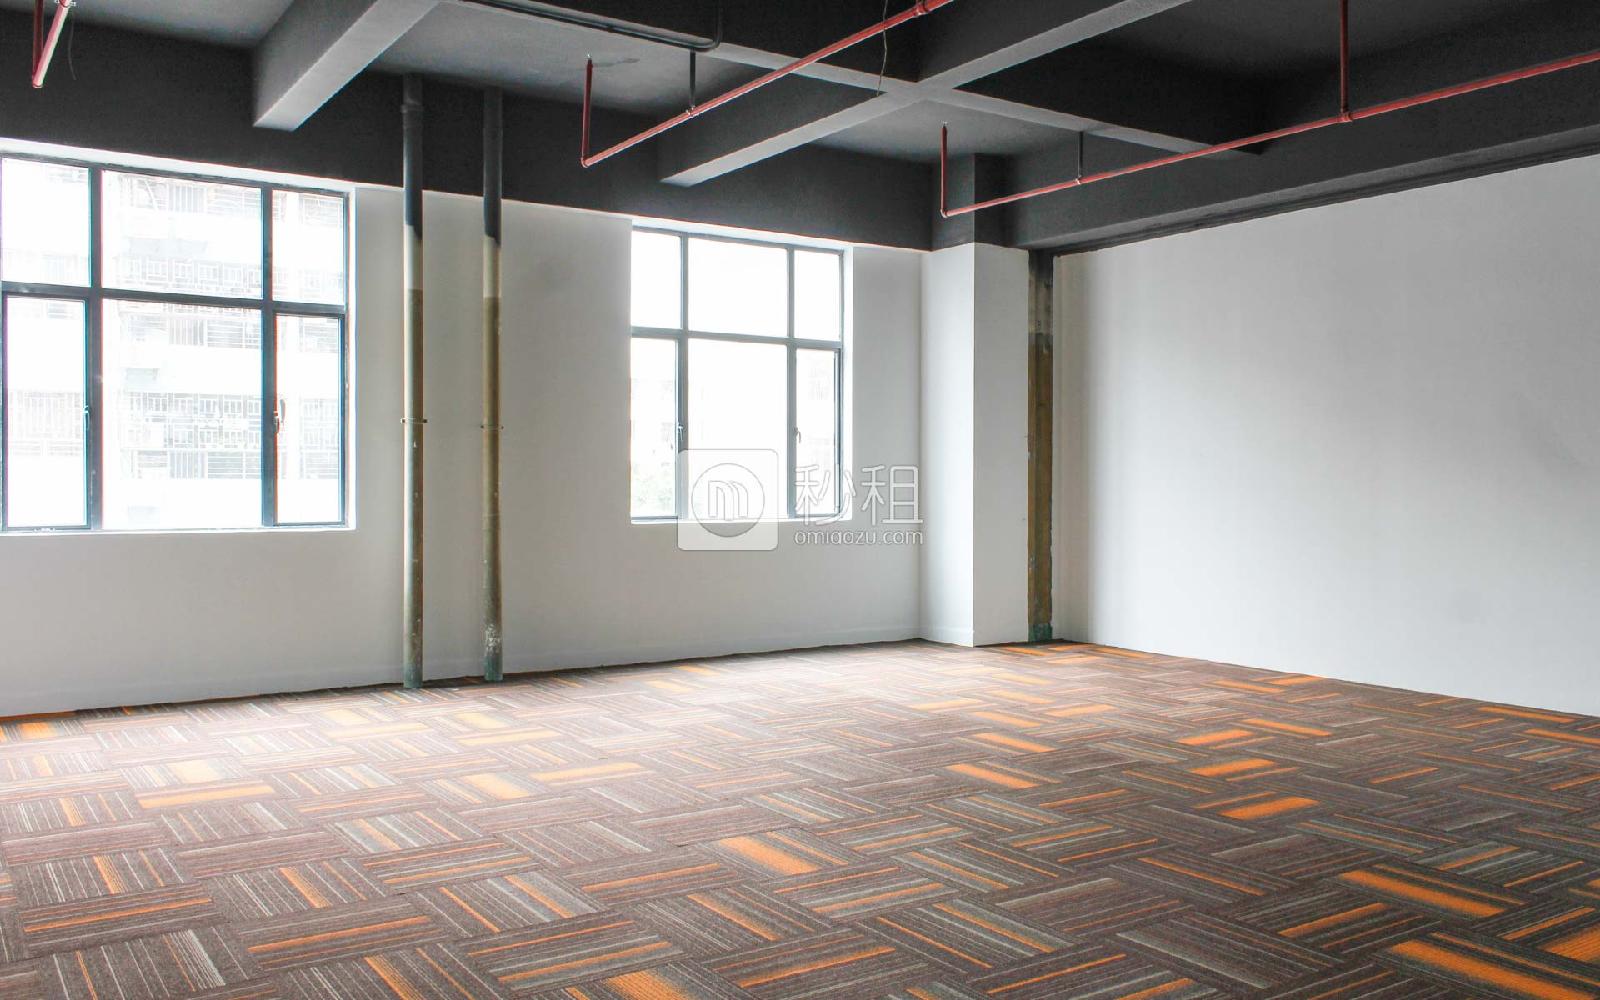 聚创金谷文化创意园写字楼出租148平米简装办公室75元/m².月